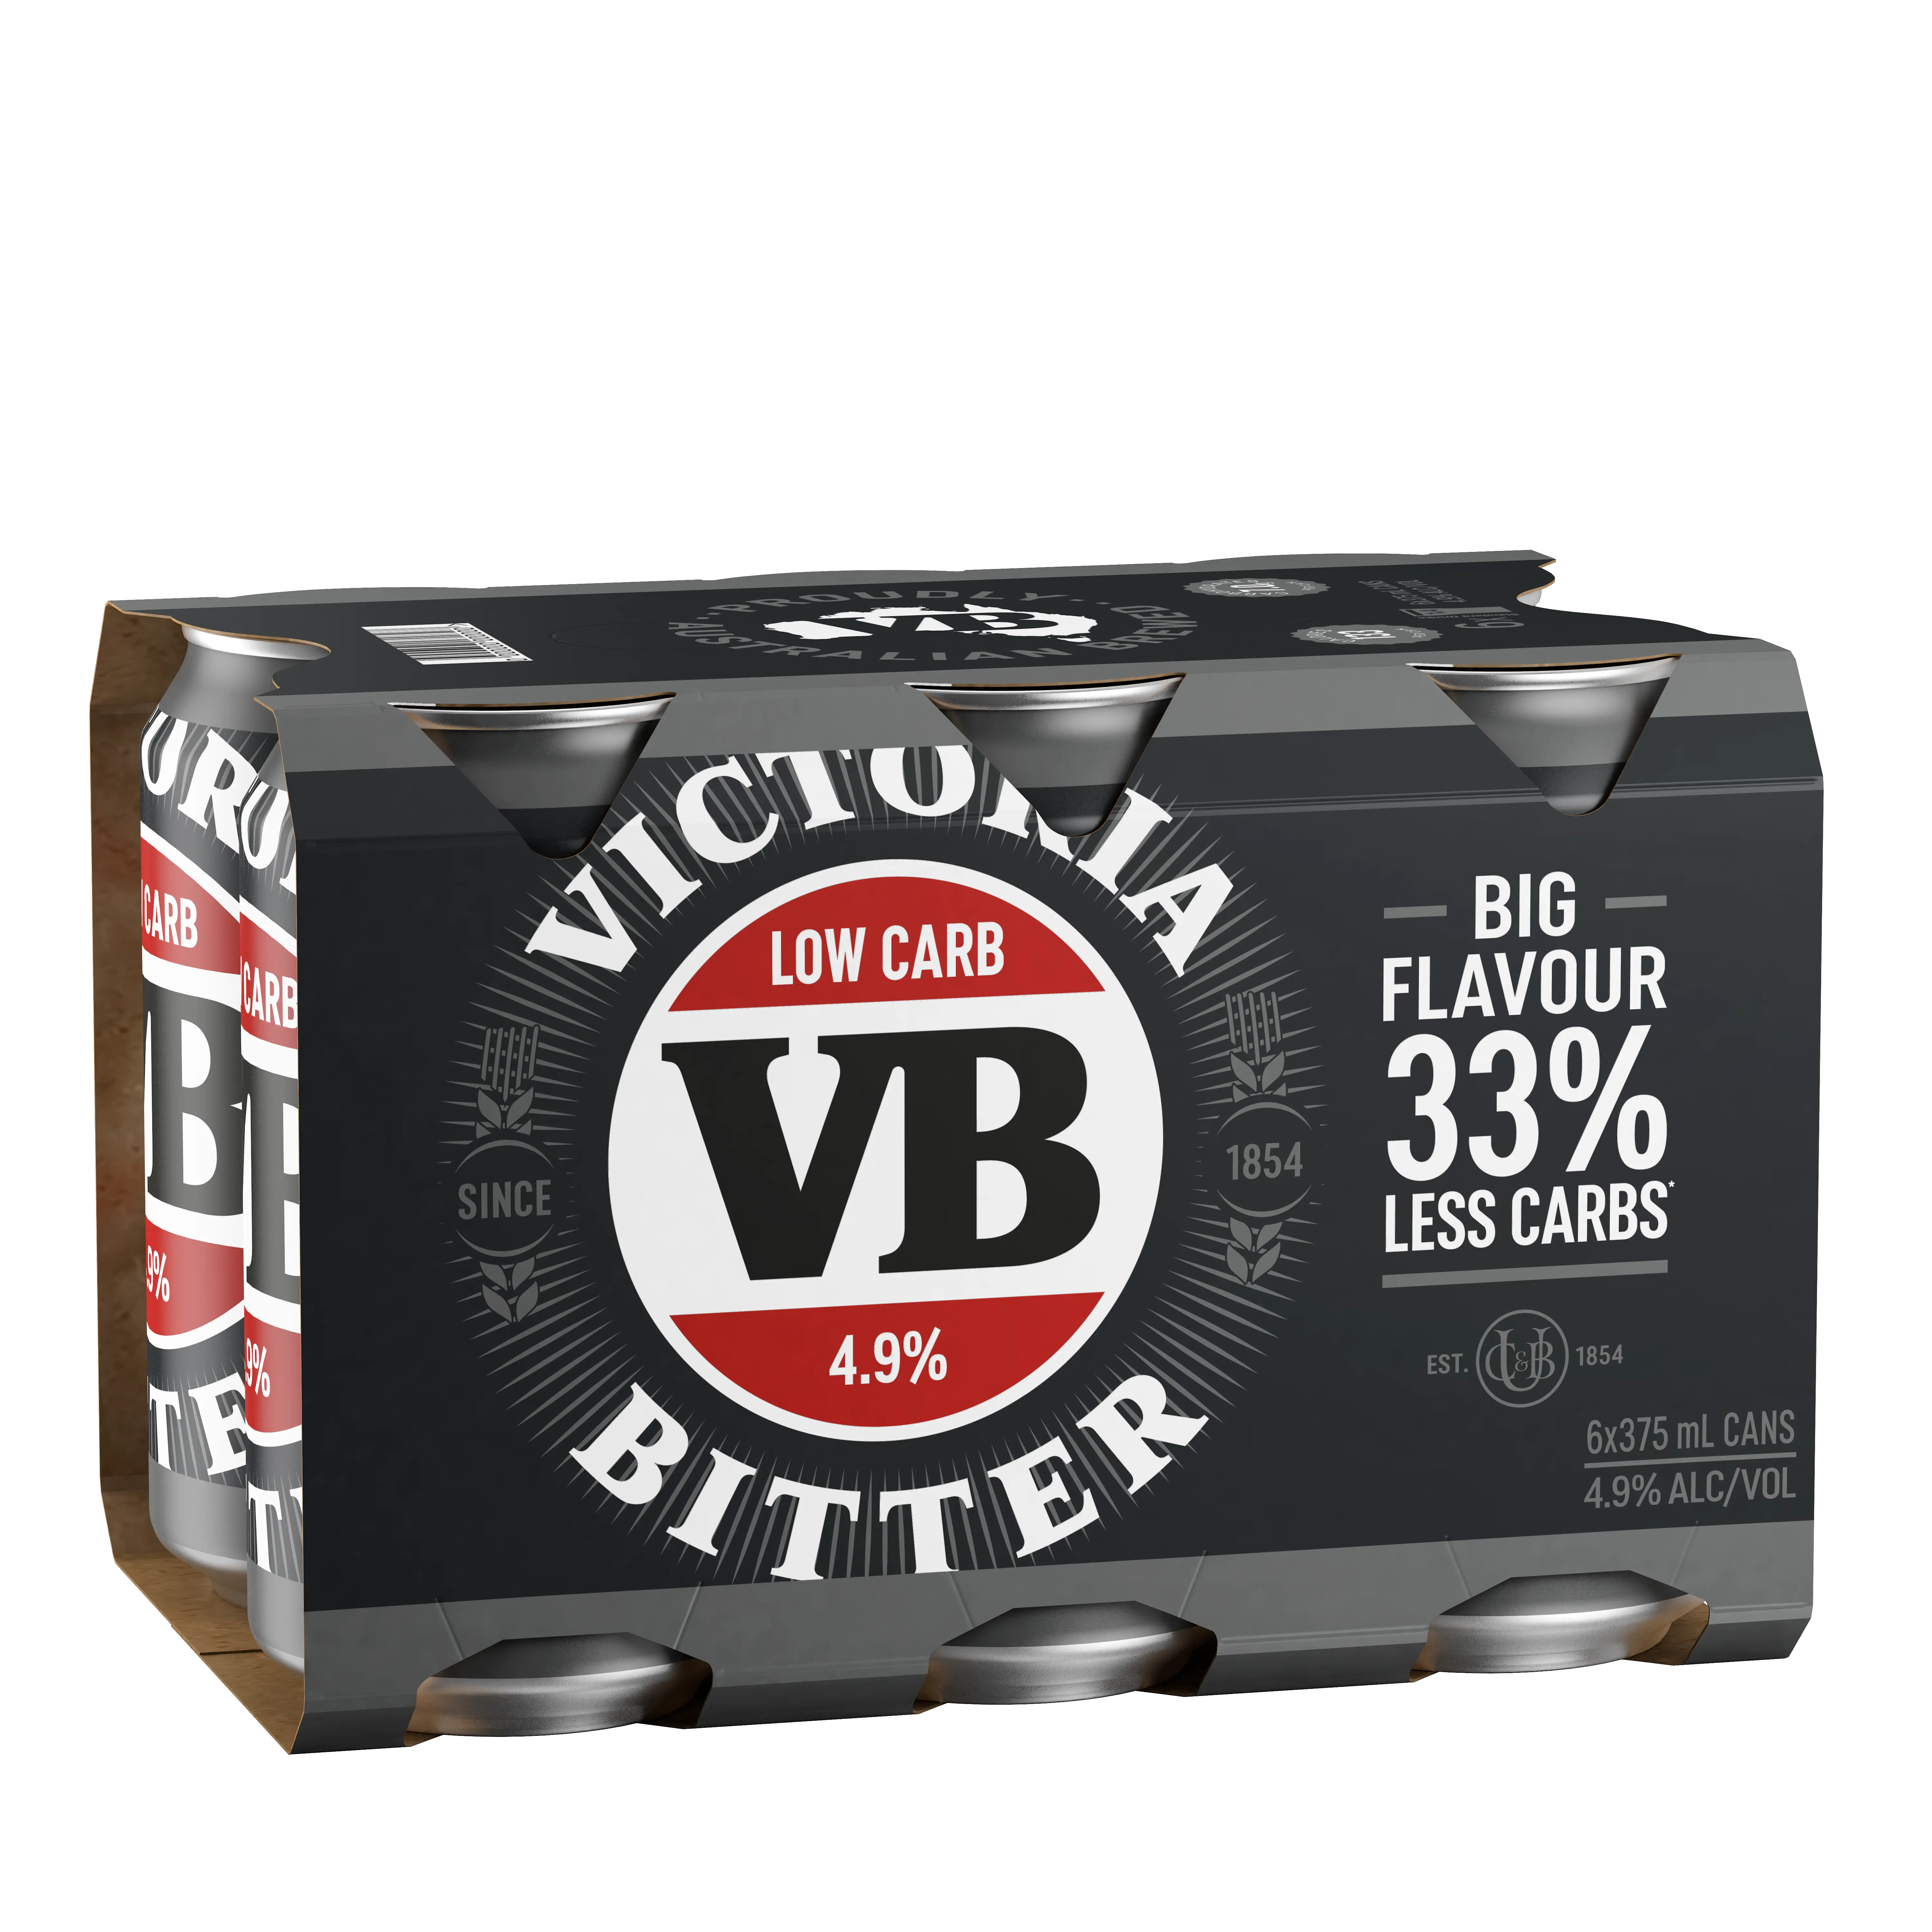 6 pack of VB Low Carb beers